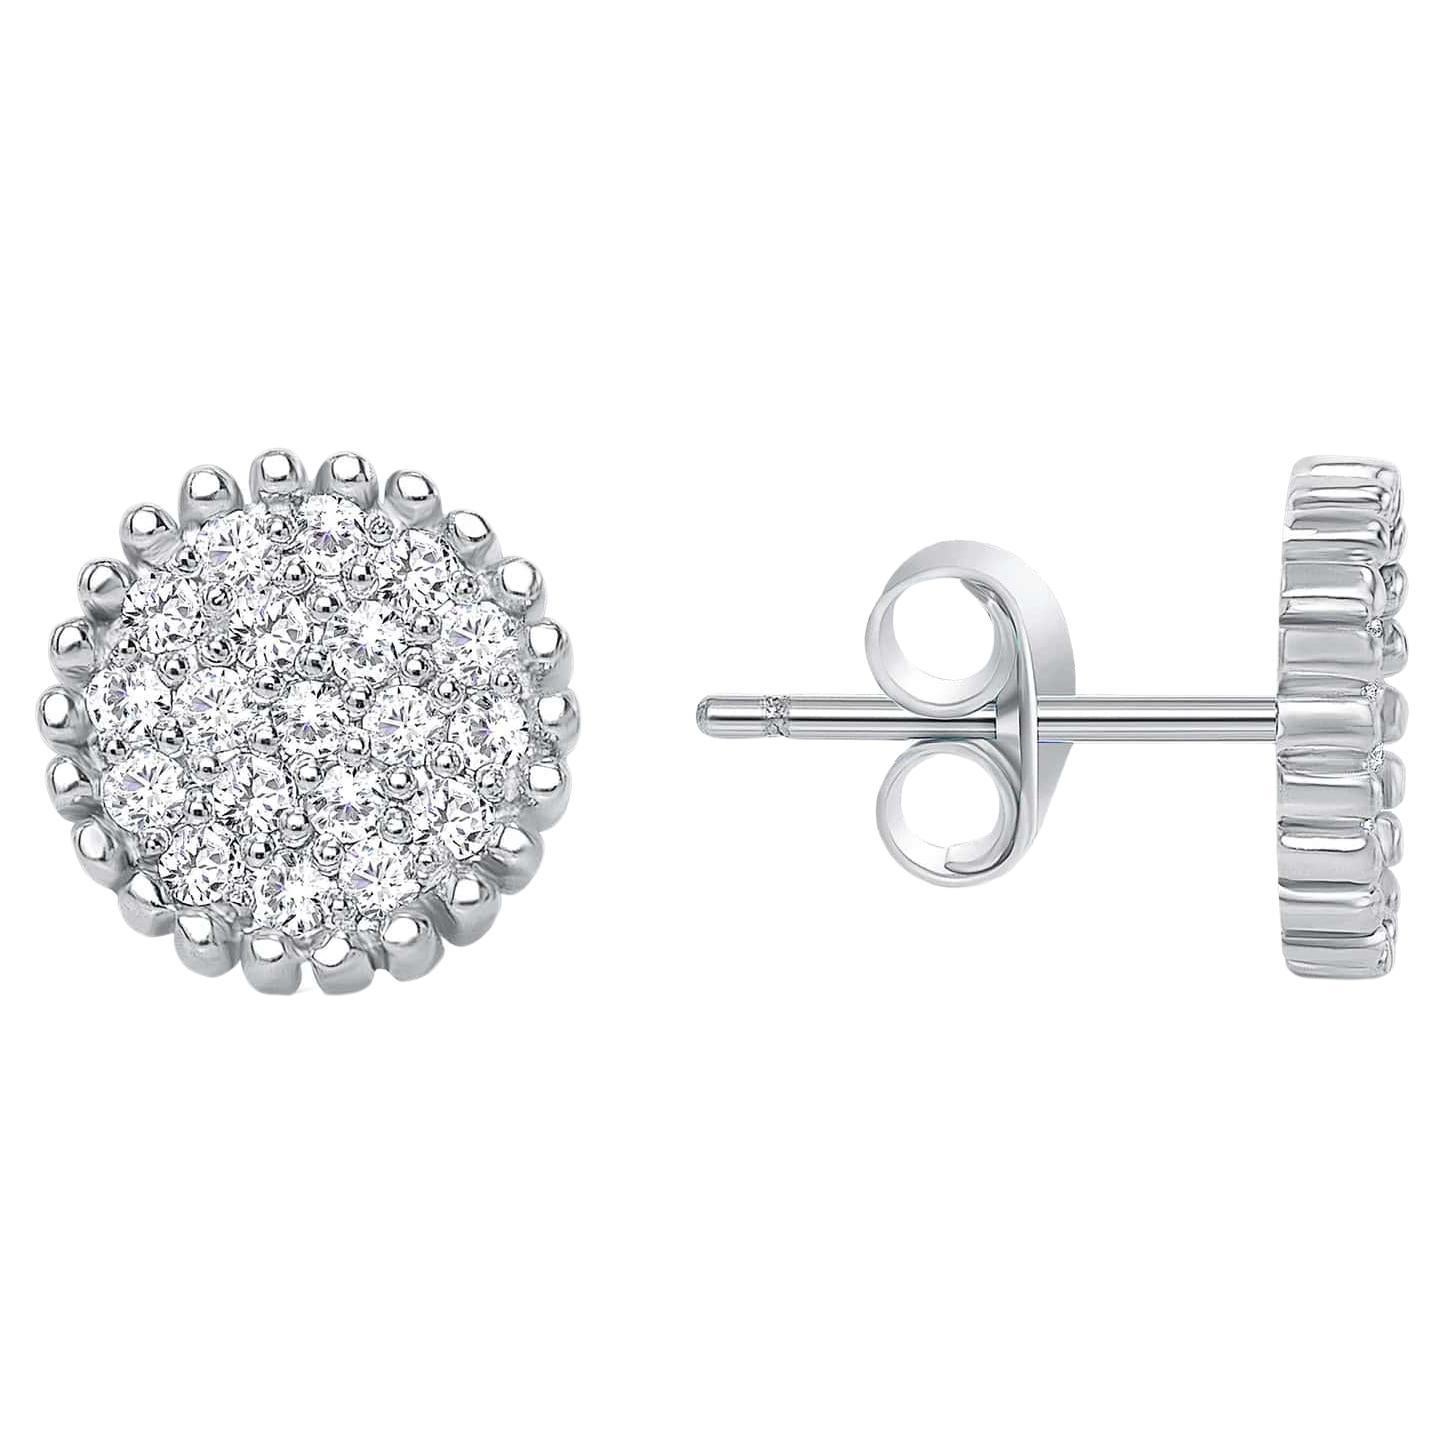 Diese wunderschön runde Form Paar einzigartige Ohrringe verfügen über erstaunliche kleine Round Cut Diamanten in einem atemberaubenden Pflaster Fassung in 14k Gold. Perfektes Geschenk für Jahrestage, Geburtstage, Valentinstage, Abschlussfeiern